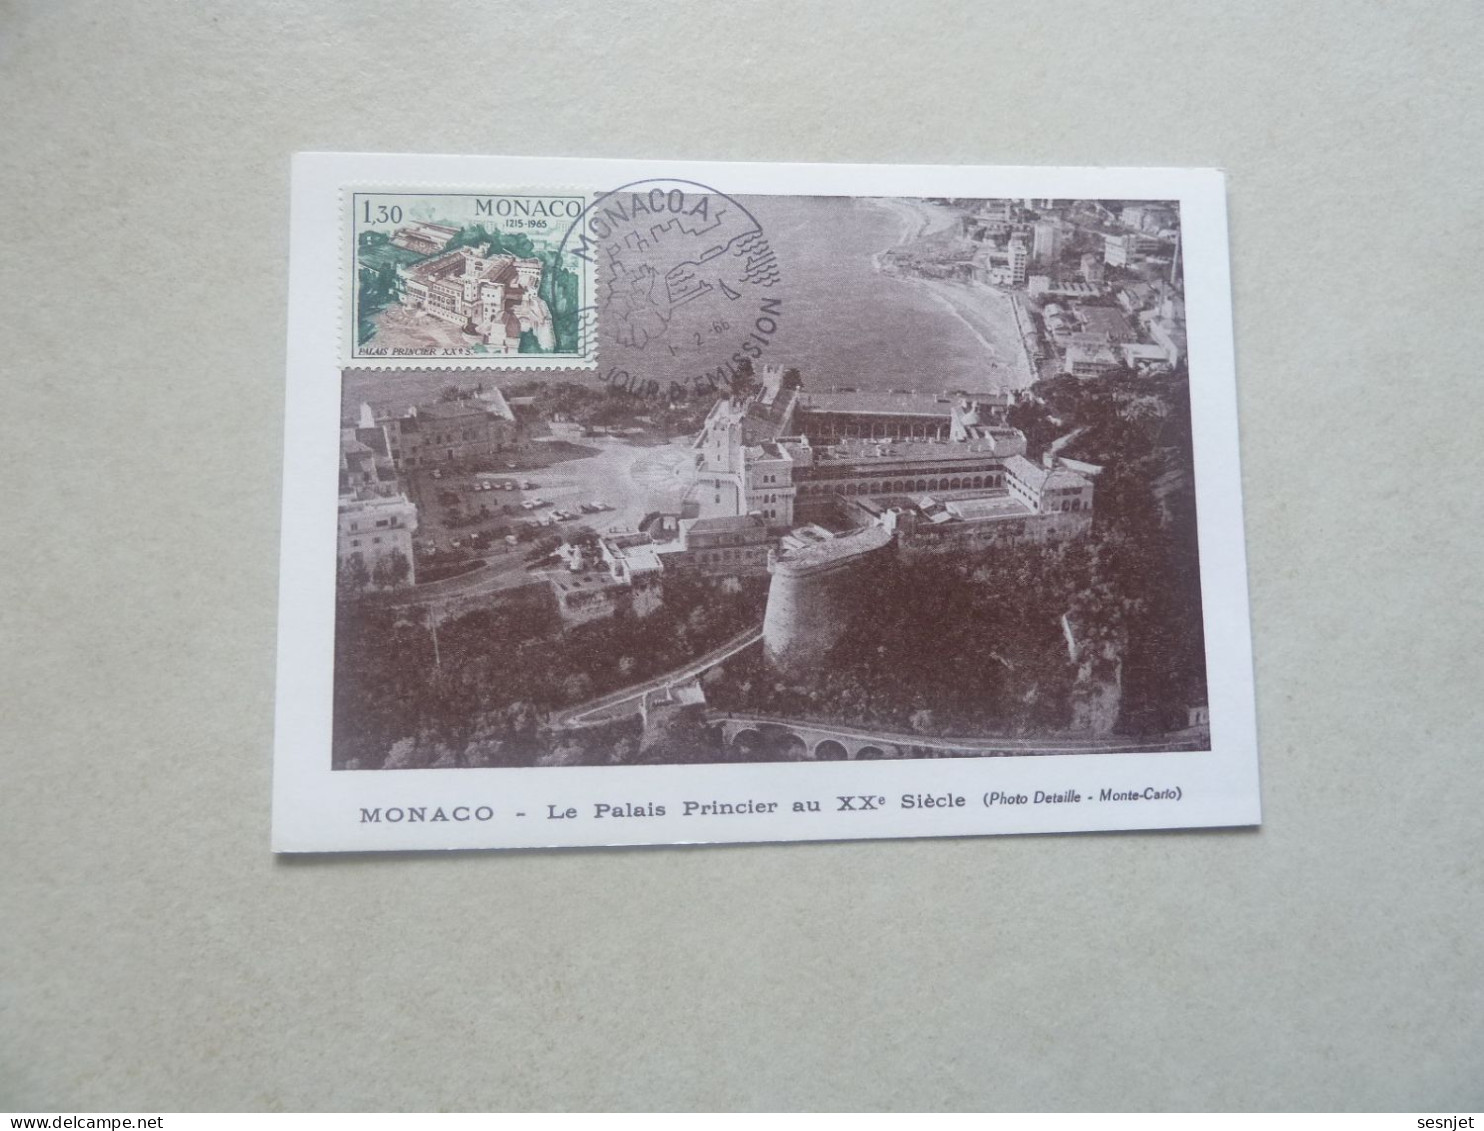 Monaco - Le Palais Au 17ème Siècle - 1f.30 - Yt 682 - Carte Premier Jour D'Emission - Année 1966 - - Cartoline Maximum